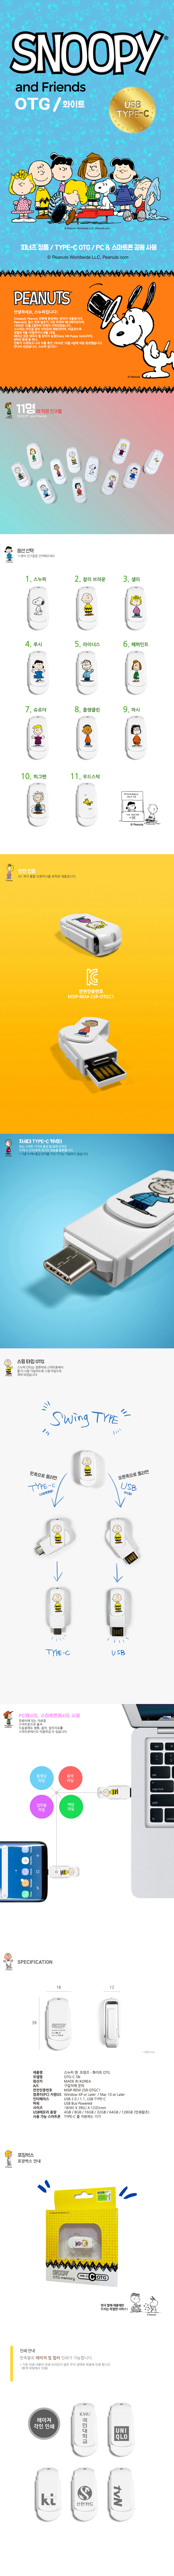 스누피 USB-C OTG 32G C-SN 14,000원 - 캠브리트 디지털, PC저장장치, USB, 캐릭터/디자인 바보사랑 스누피 USB-C OTG 32G C-SN 14,000원 - 캠브리트 디지털, PC저장장치, USB, 캐릭터/디자인 바보사랑